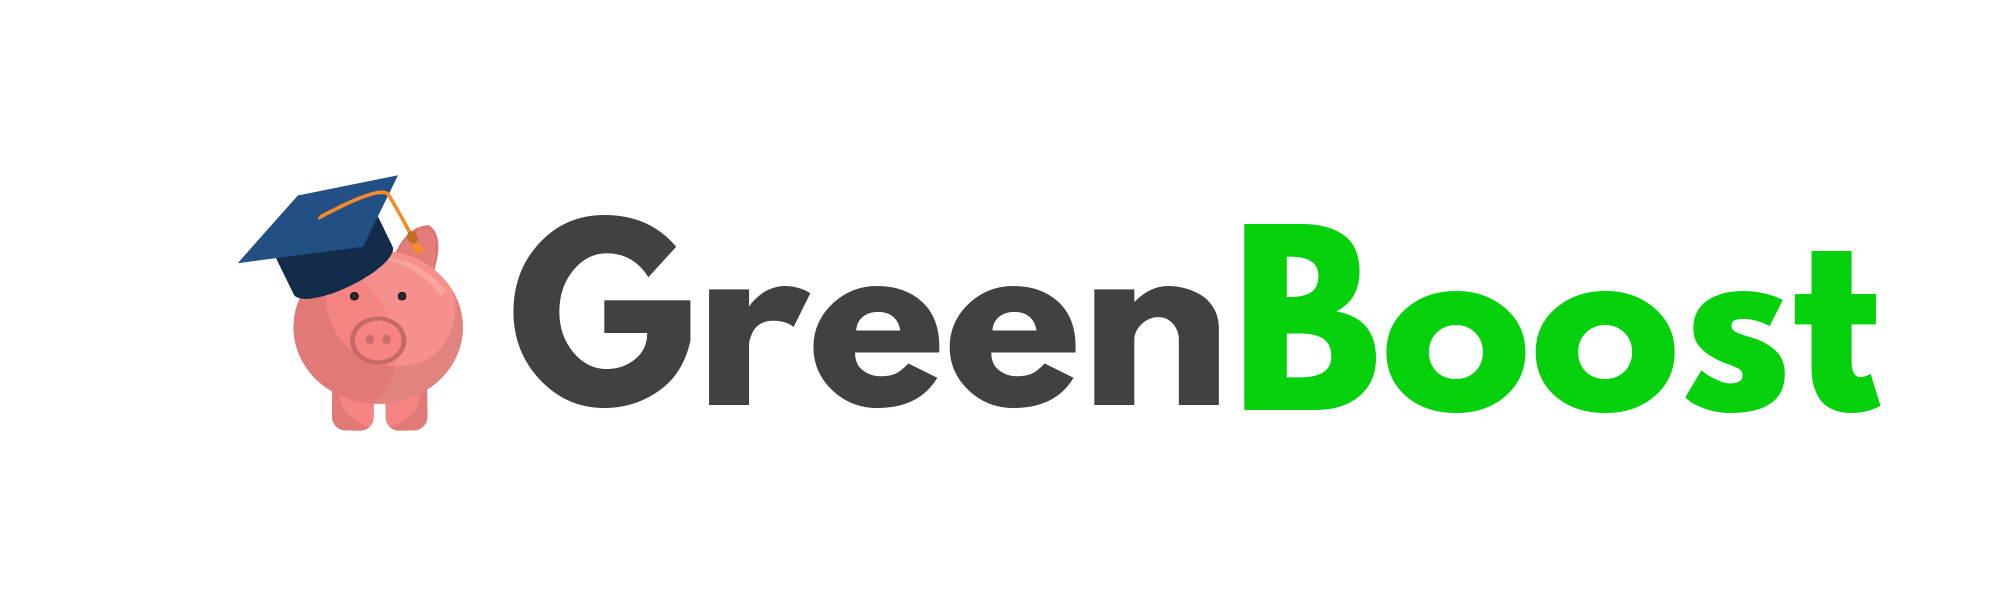 Green Boost – Learn to Prosper